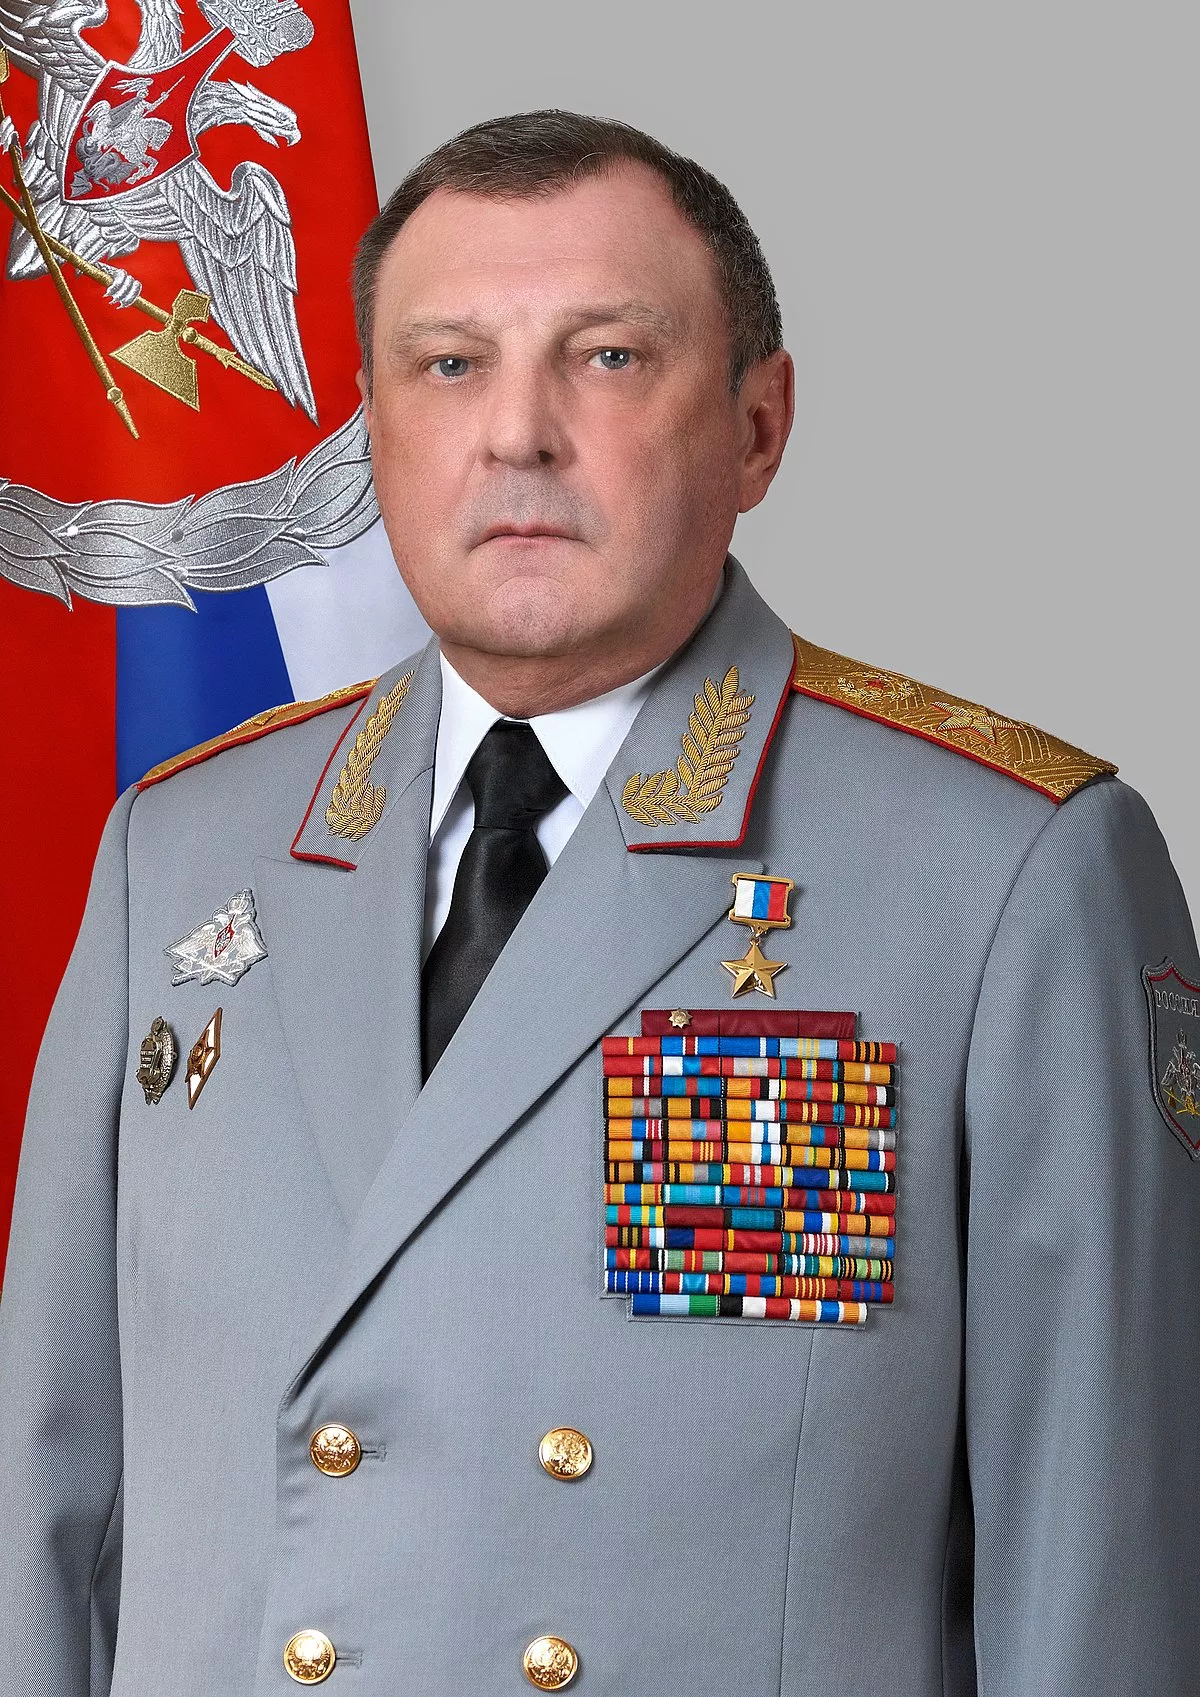 Вся военная служба Булгакова была связана с тыловой работой и обеспечением армии